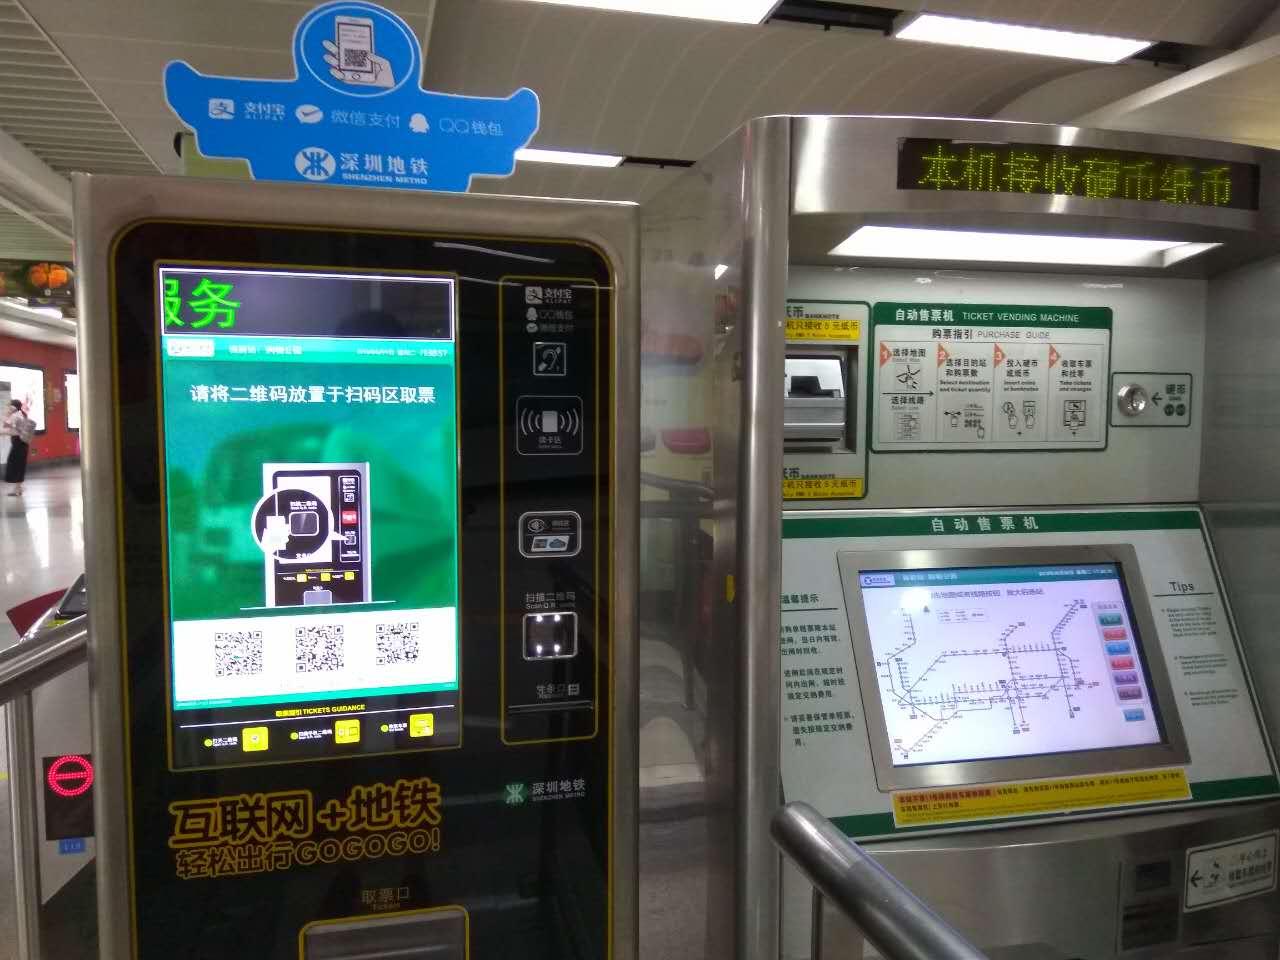 token-machine-subway.jpg